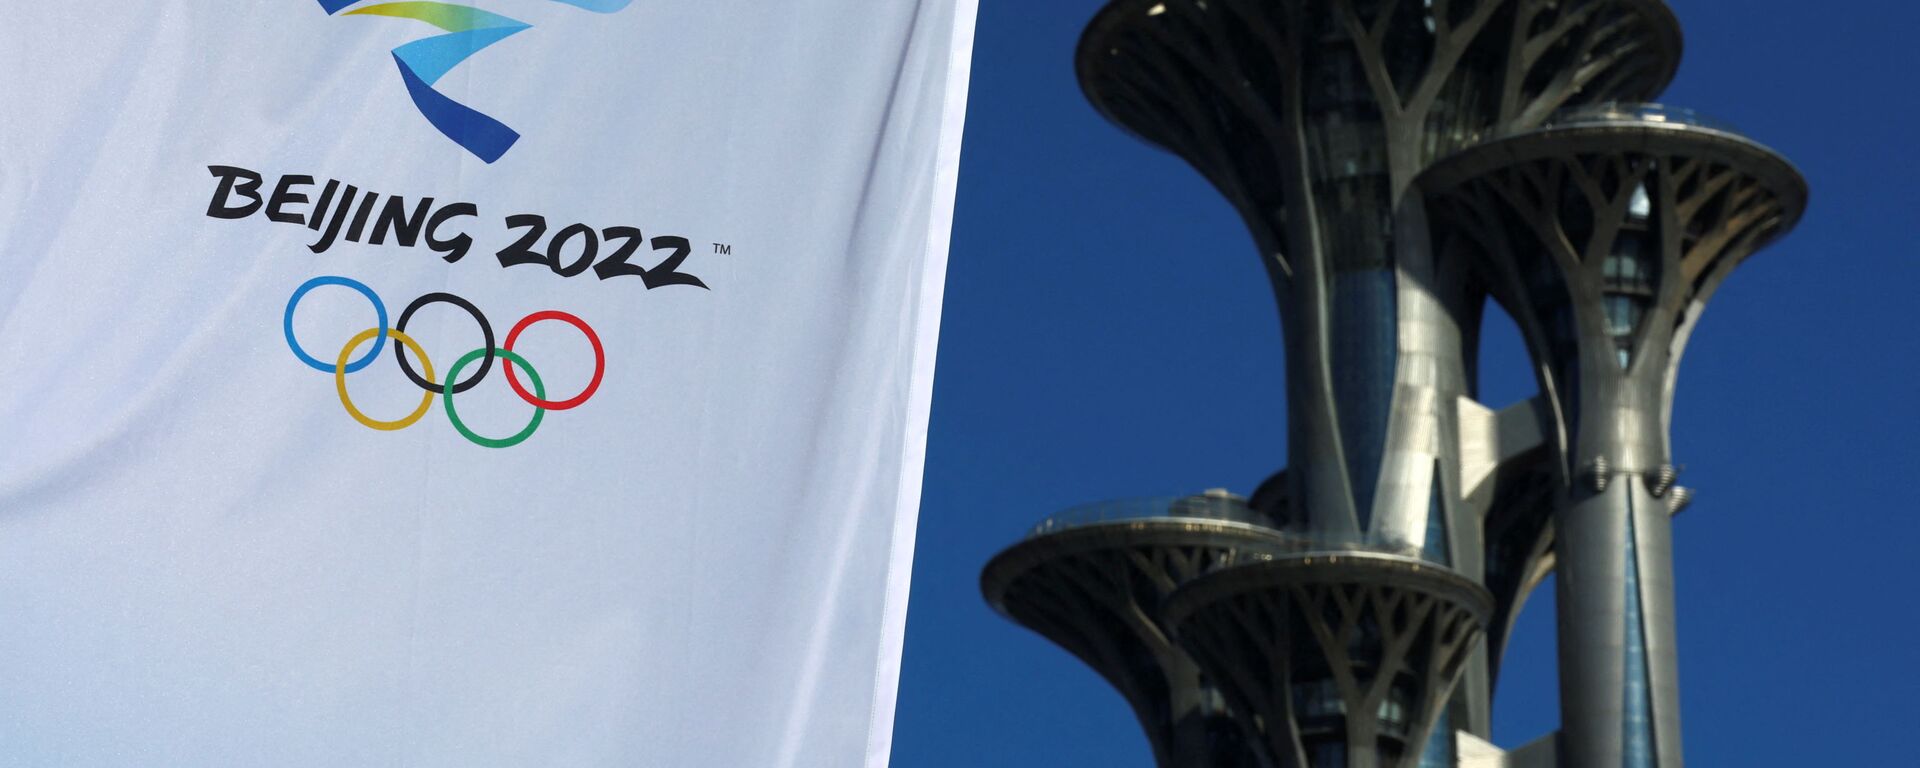 Олимпийская башня в Пекине возле Главного пресс-центра в преддверии зимних Олимпийских игр 2022 года - Sputnik Латвия, 1920, 26.01.2022